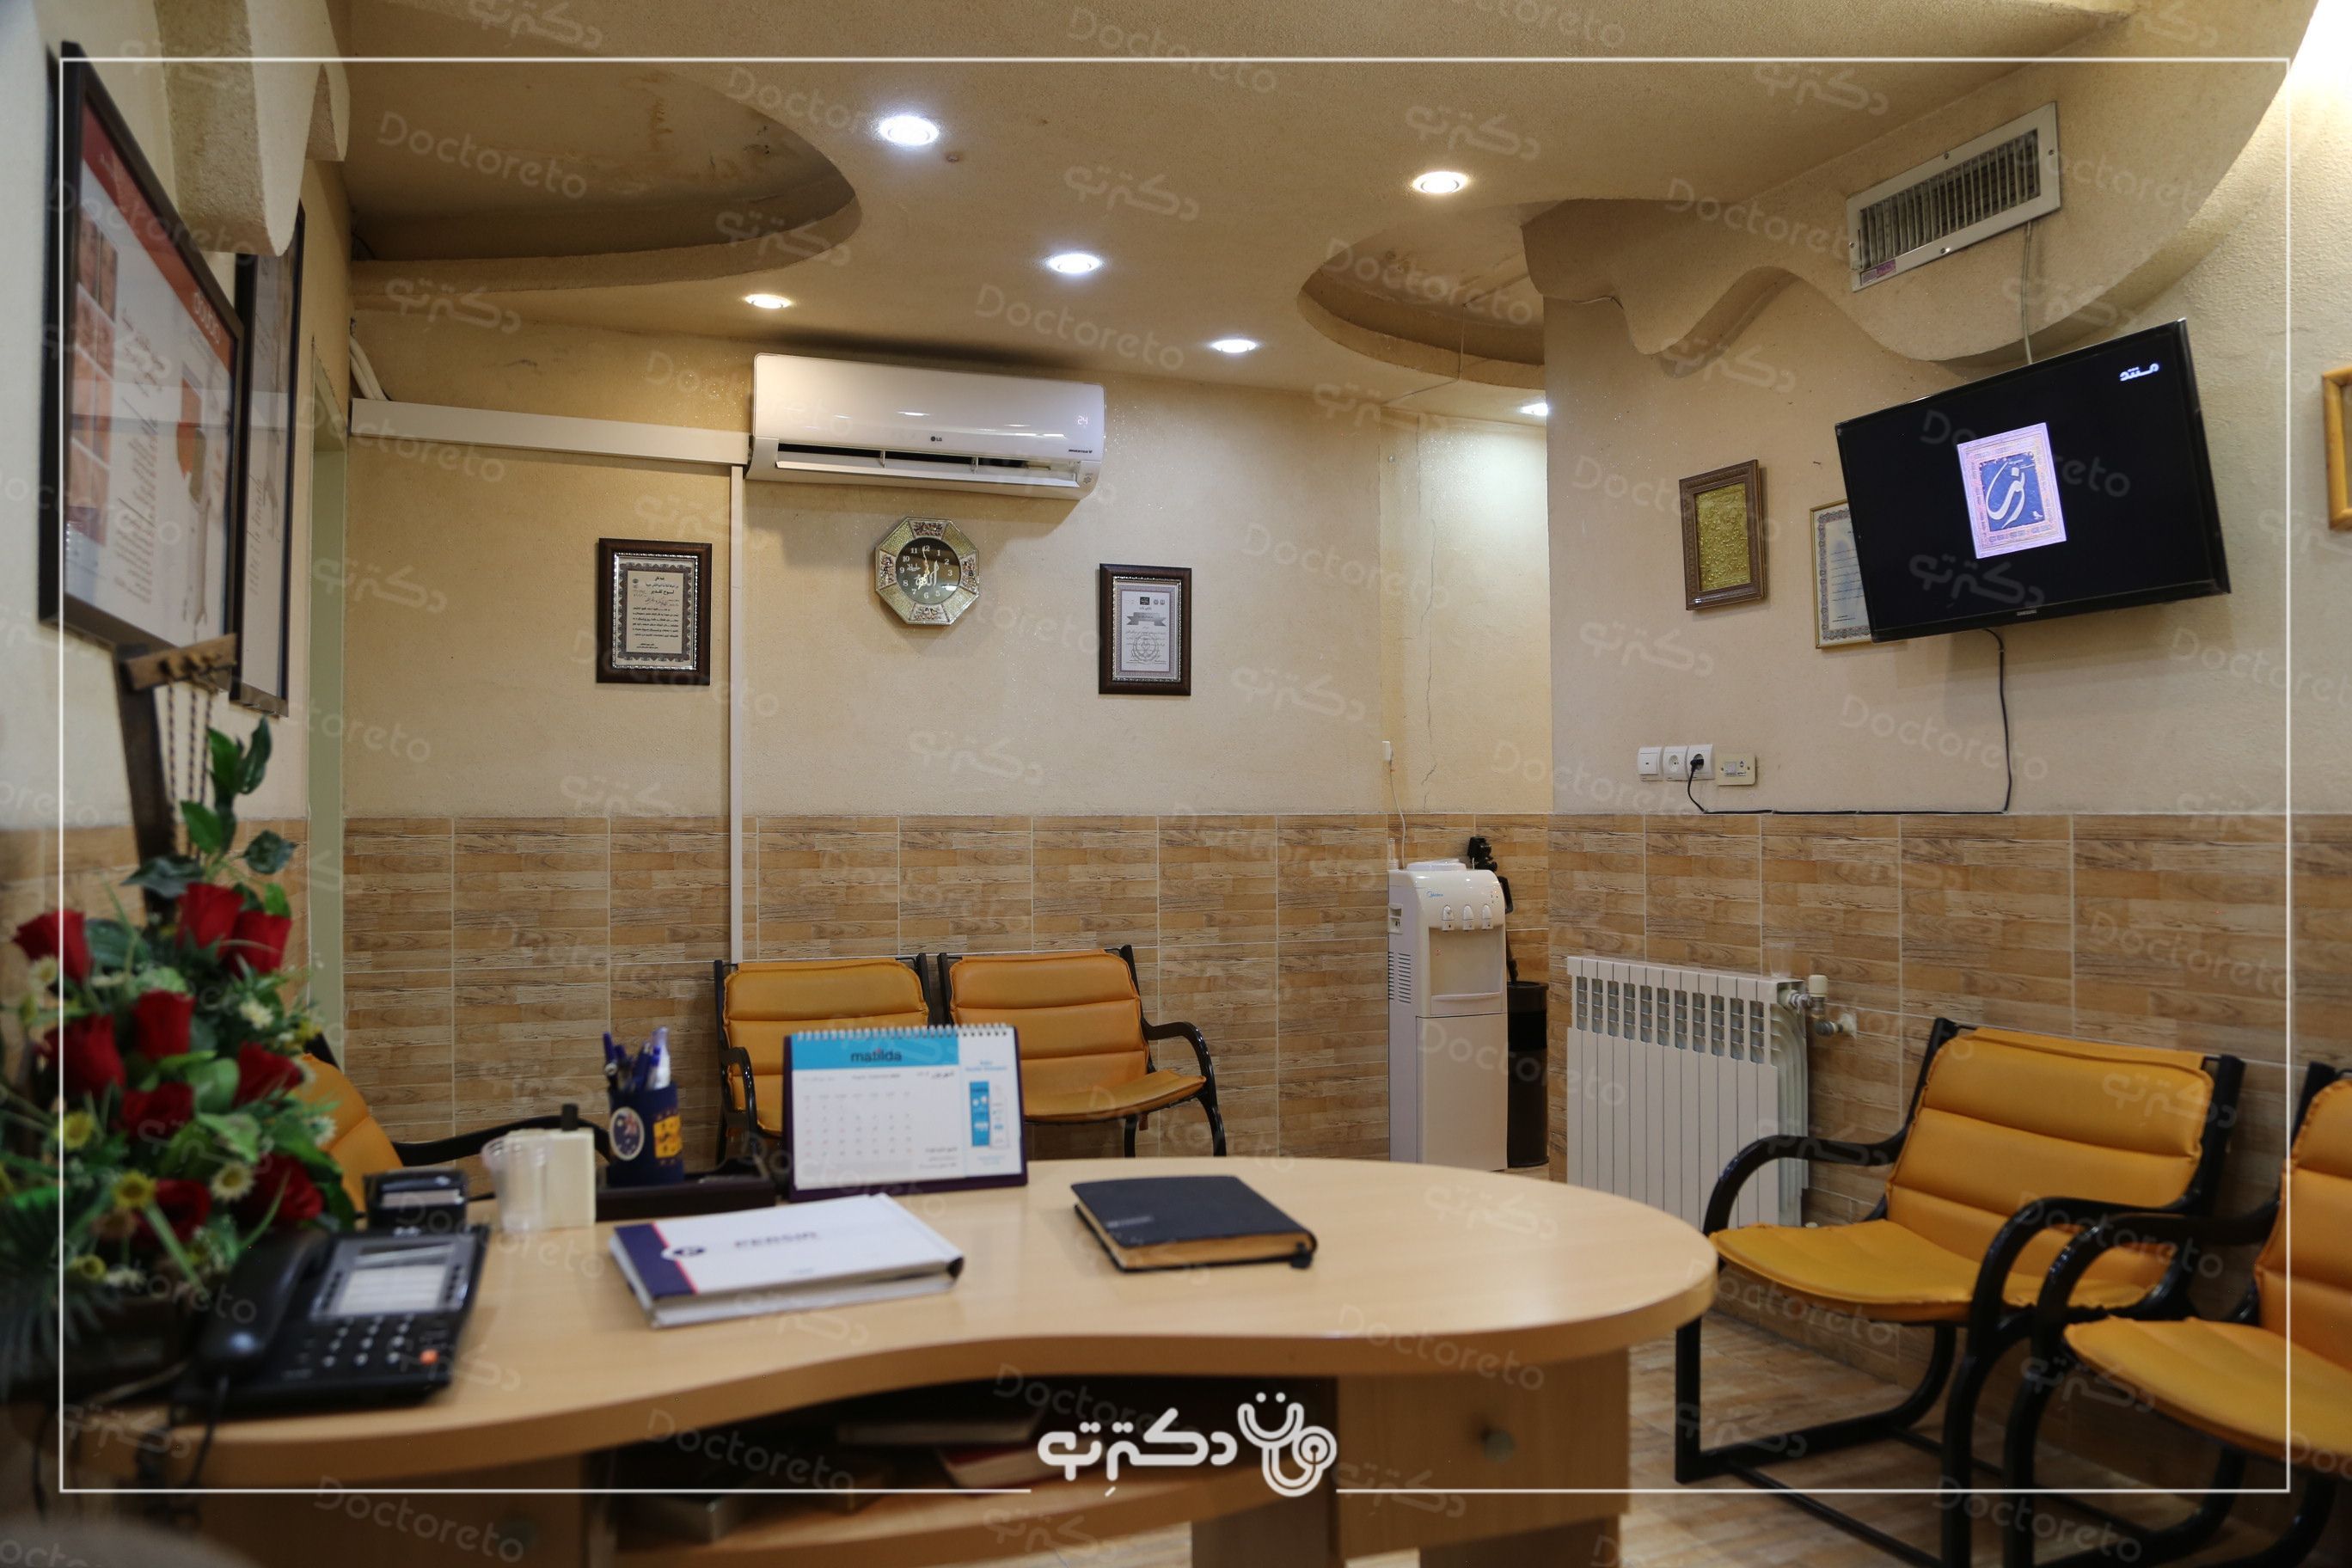 جوانسازی صورت با کمک دستگاه RF فرکشنال دکتر هما رجایی خواه در شیراز 6